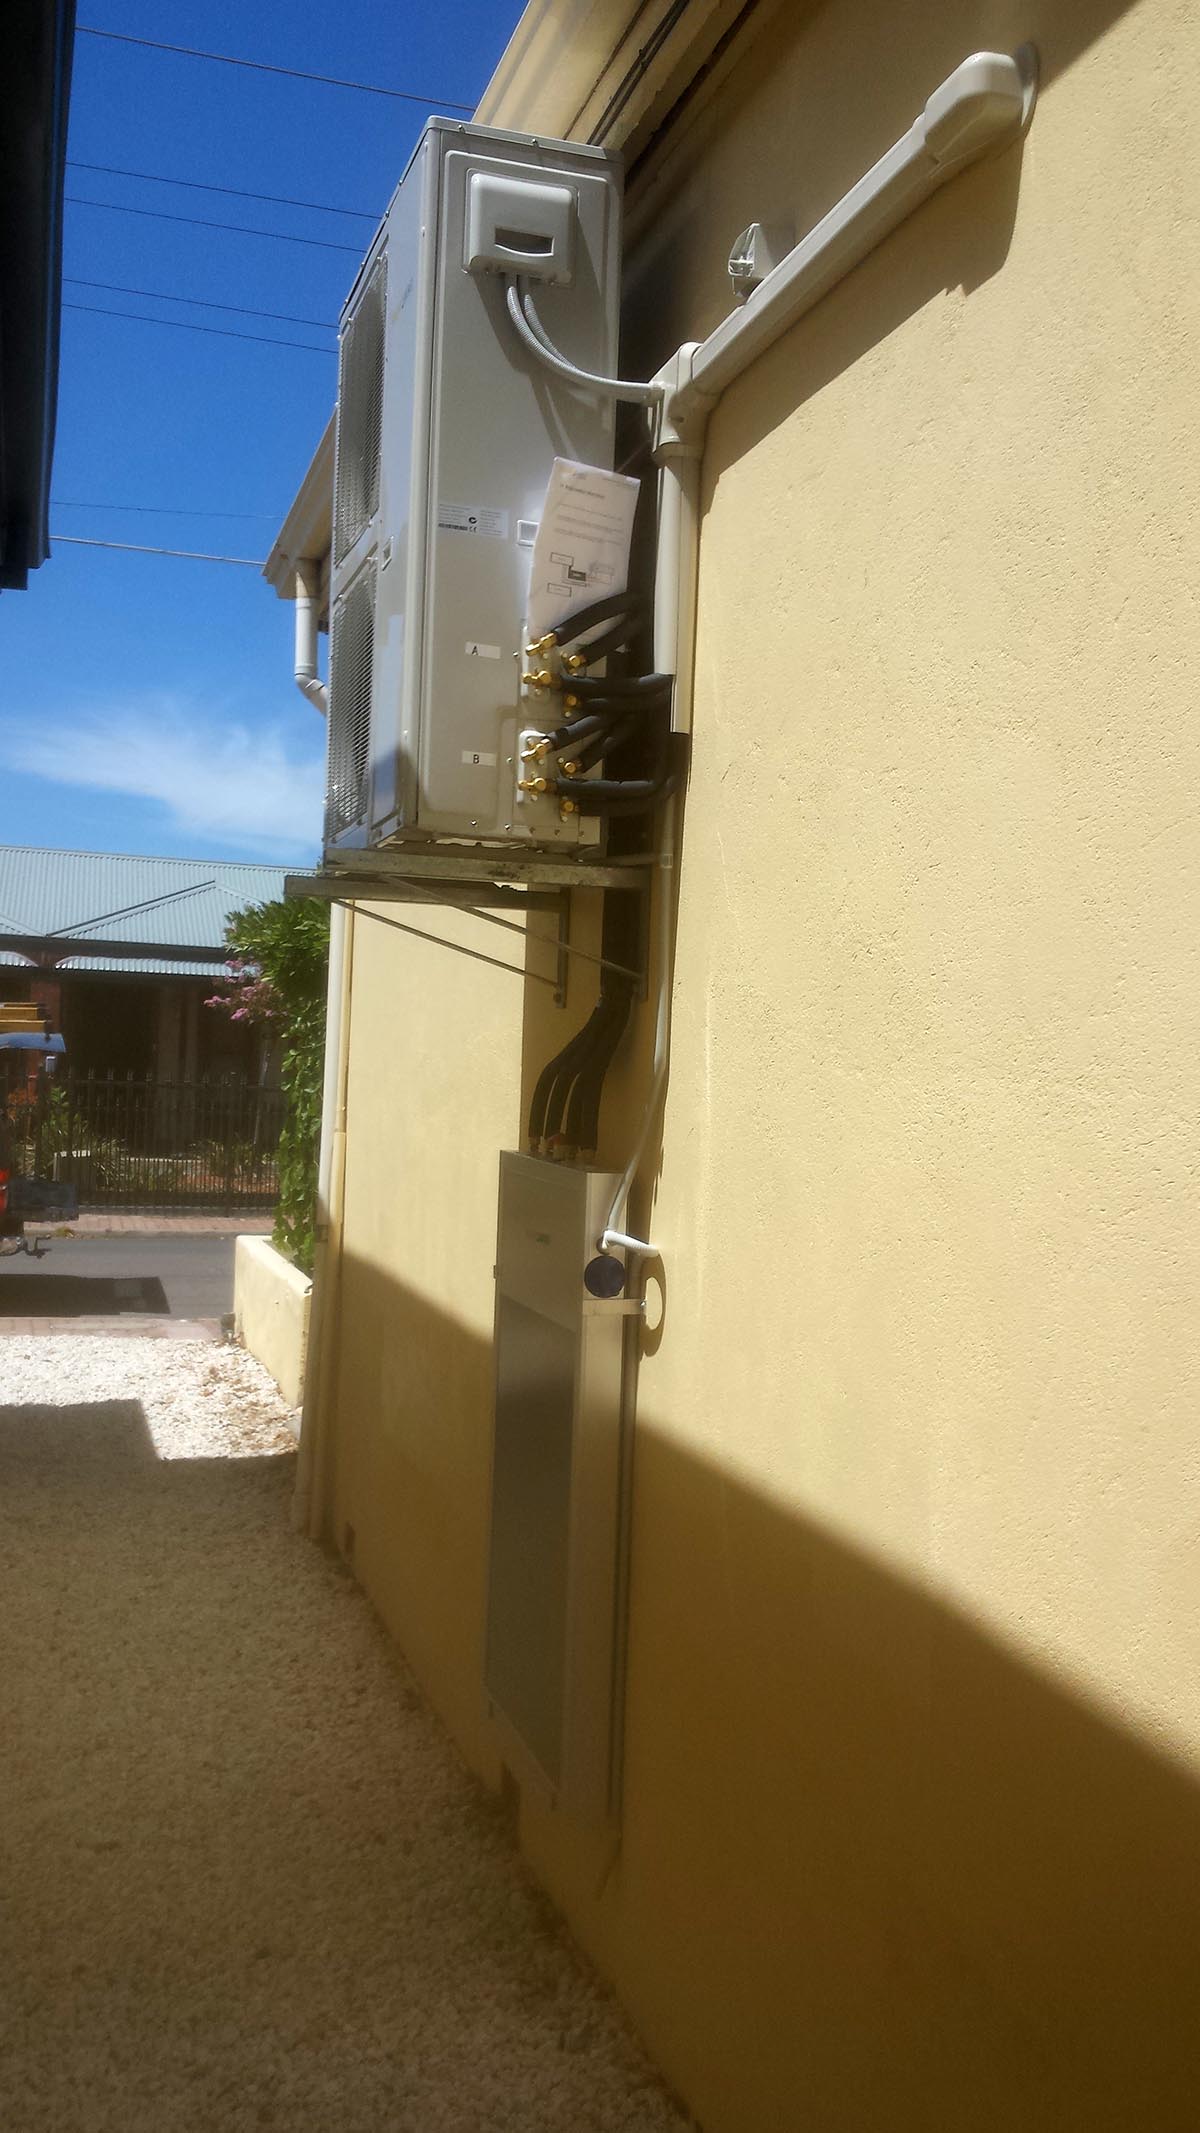 9 - Adelaide Residential Solar Panels